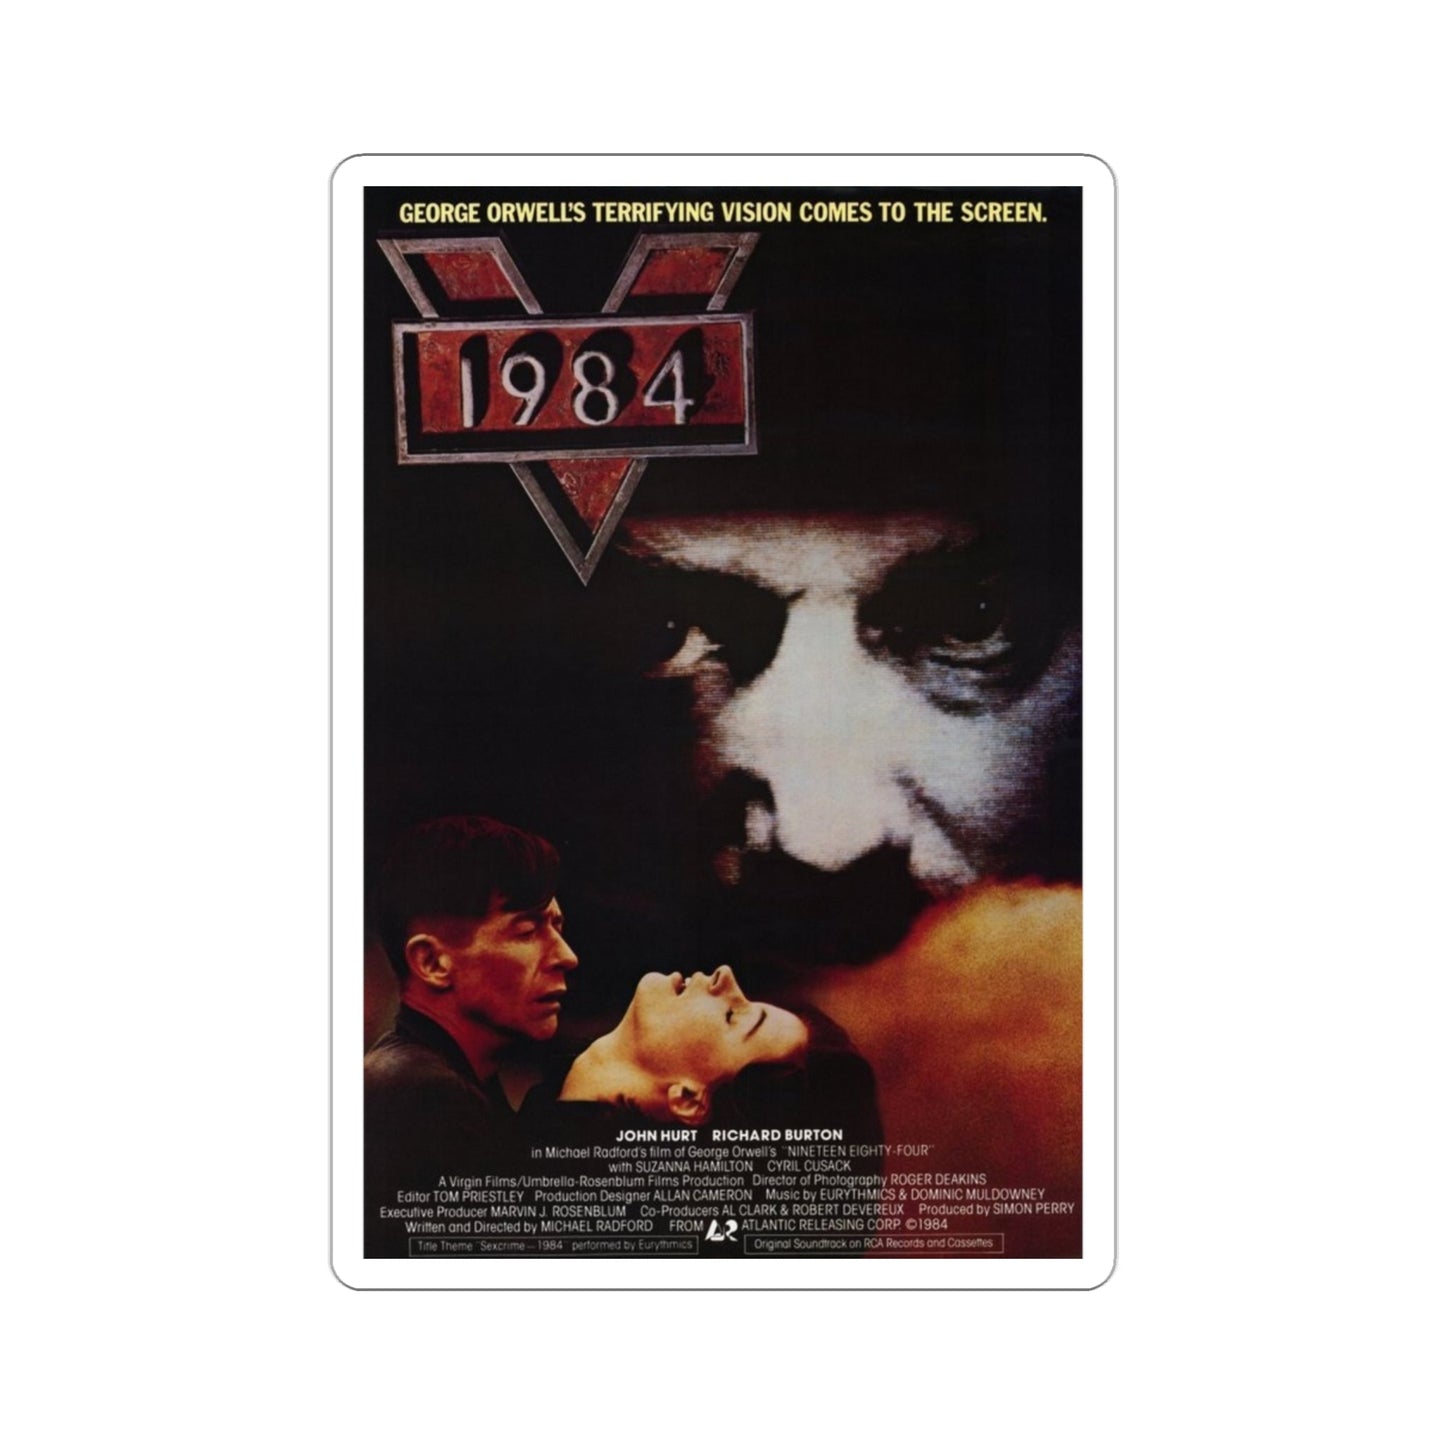 1984 1984 Movie Poster STICKER Vinyl Die-Cut Decal-3 Inch-The Sticker Space